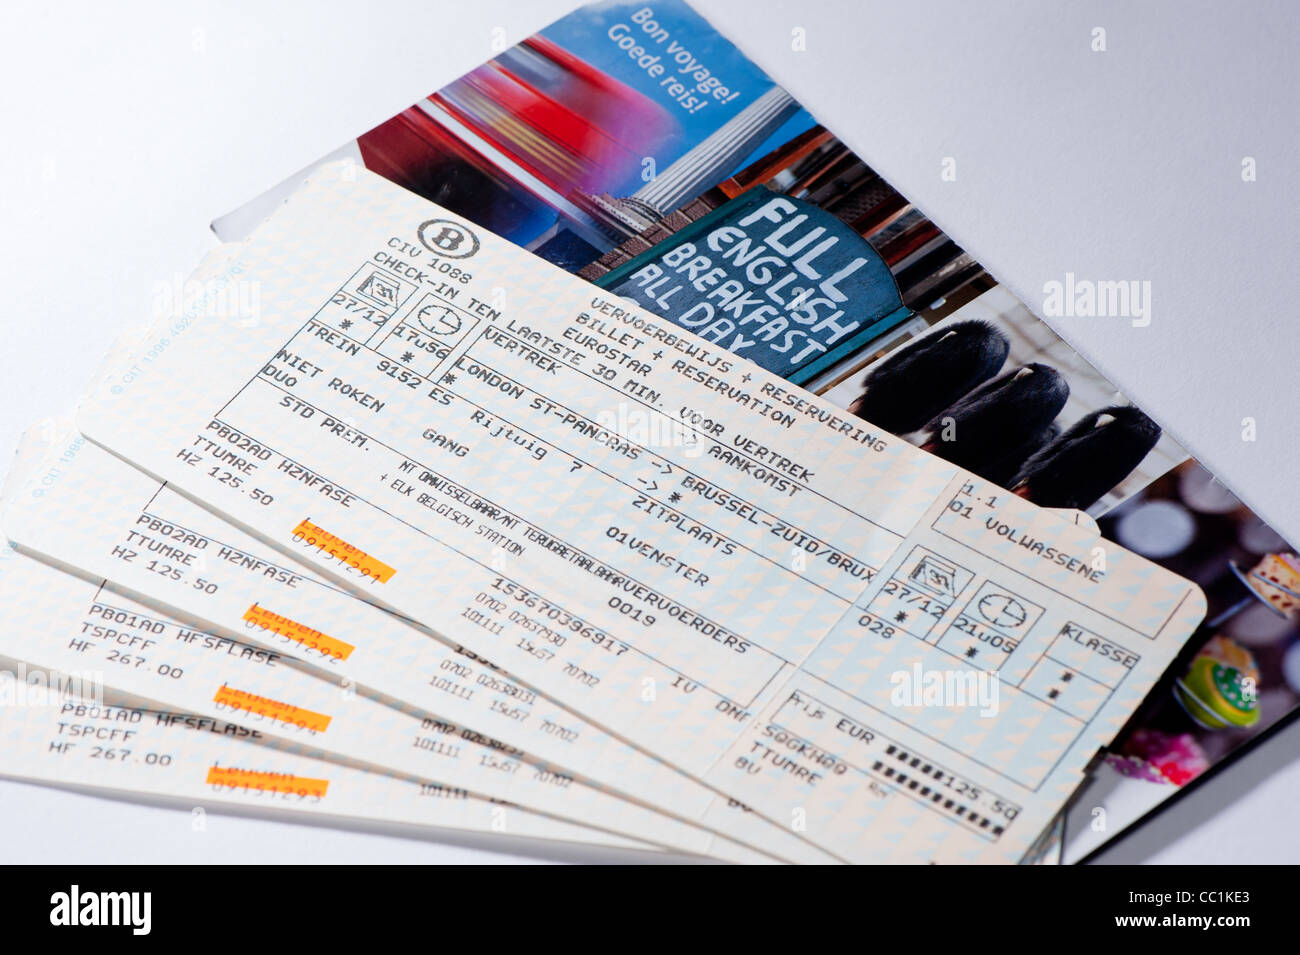 Eurostar tickets Banque de photographies et d'images à haute résolution -  Alamy